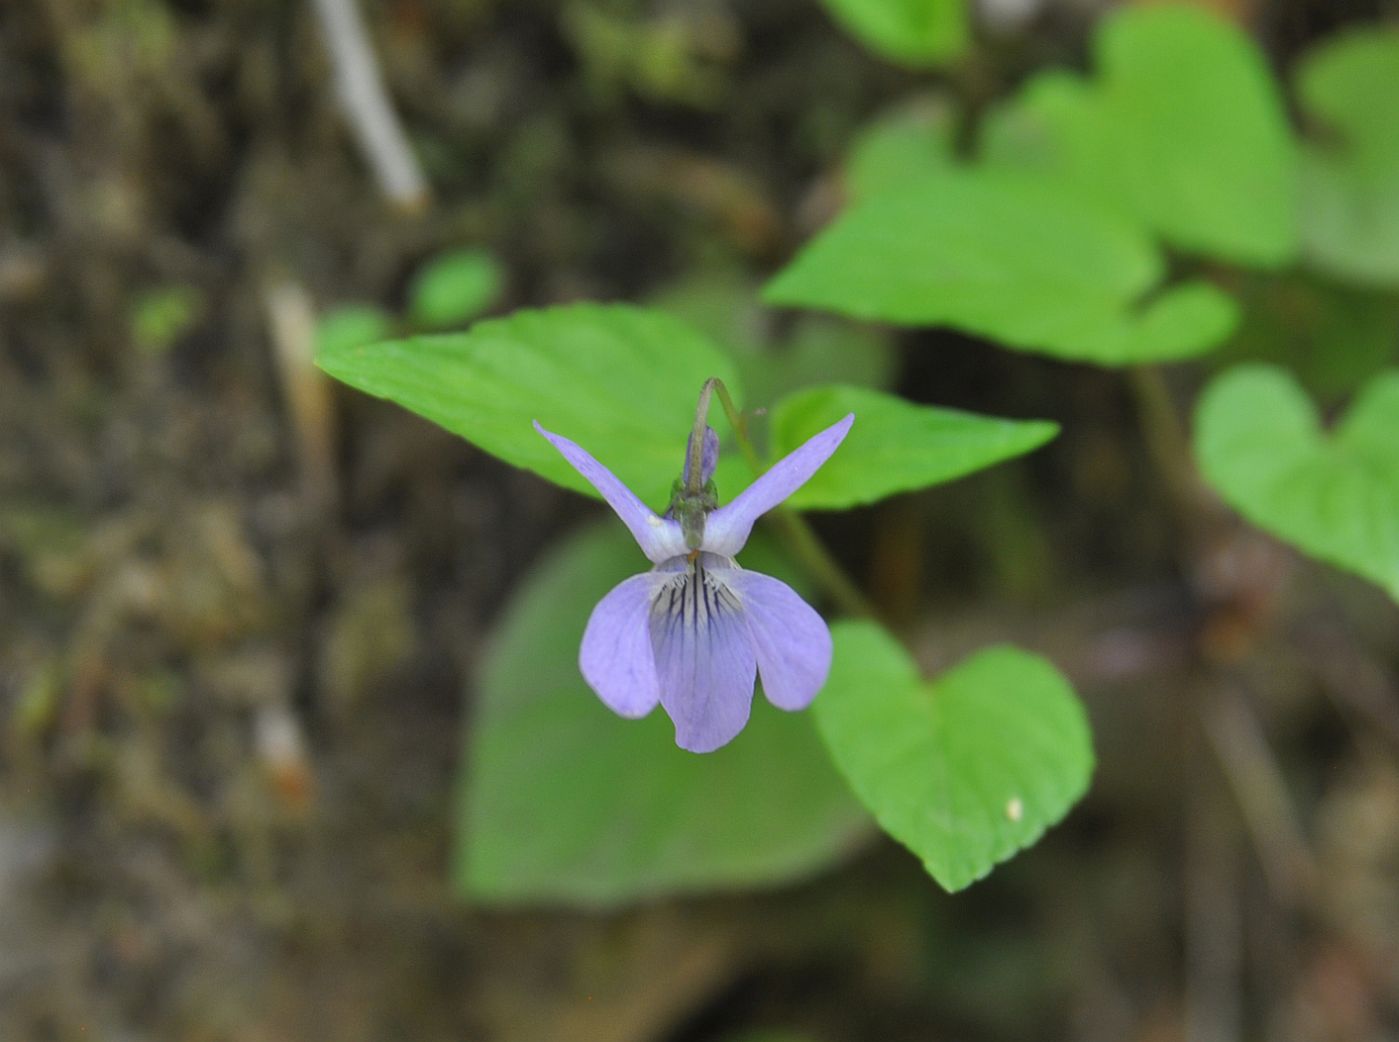 Image of genus Viola specimen.